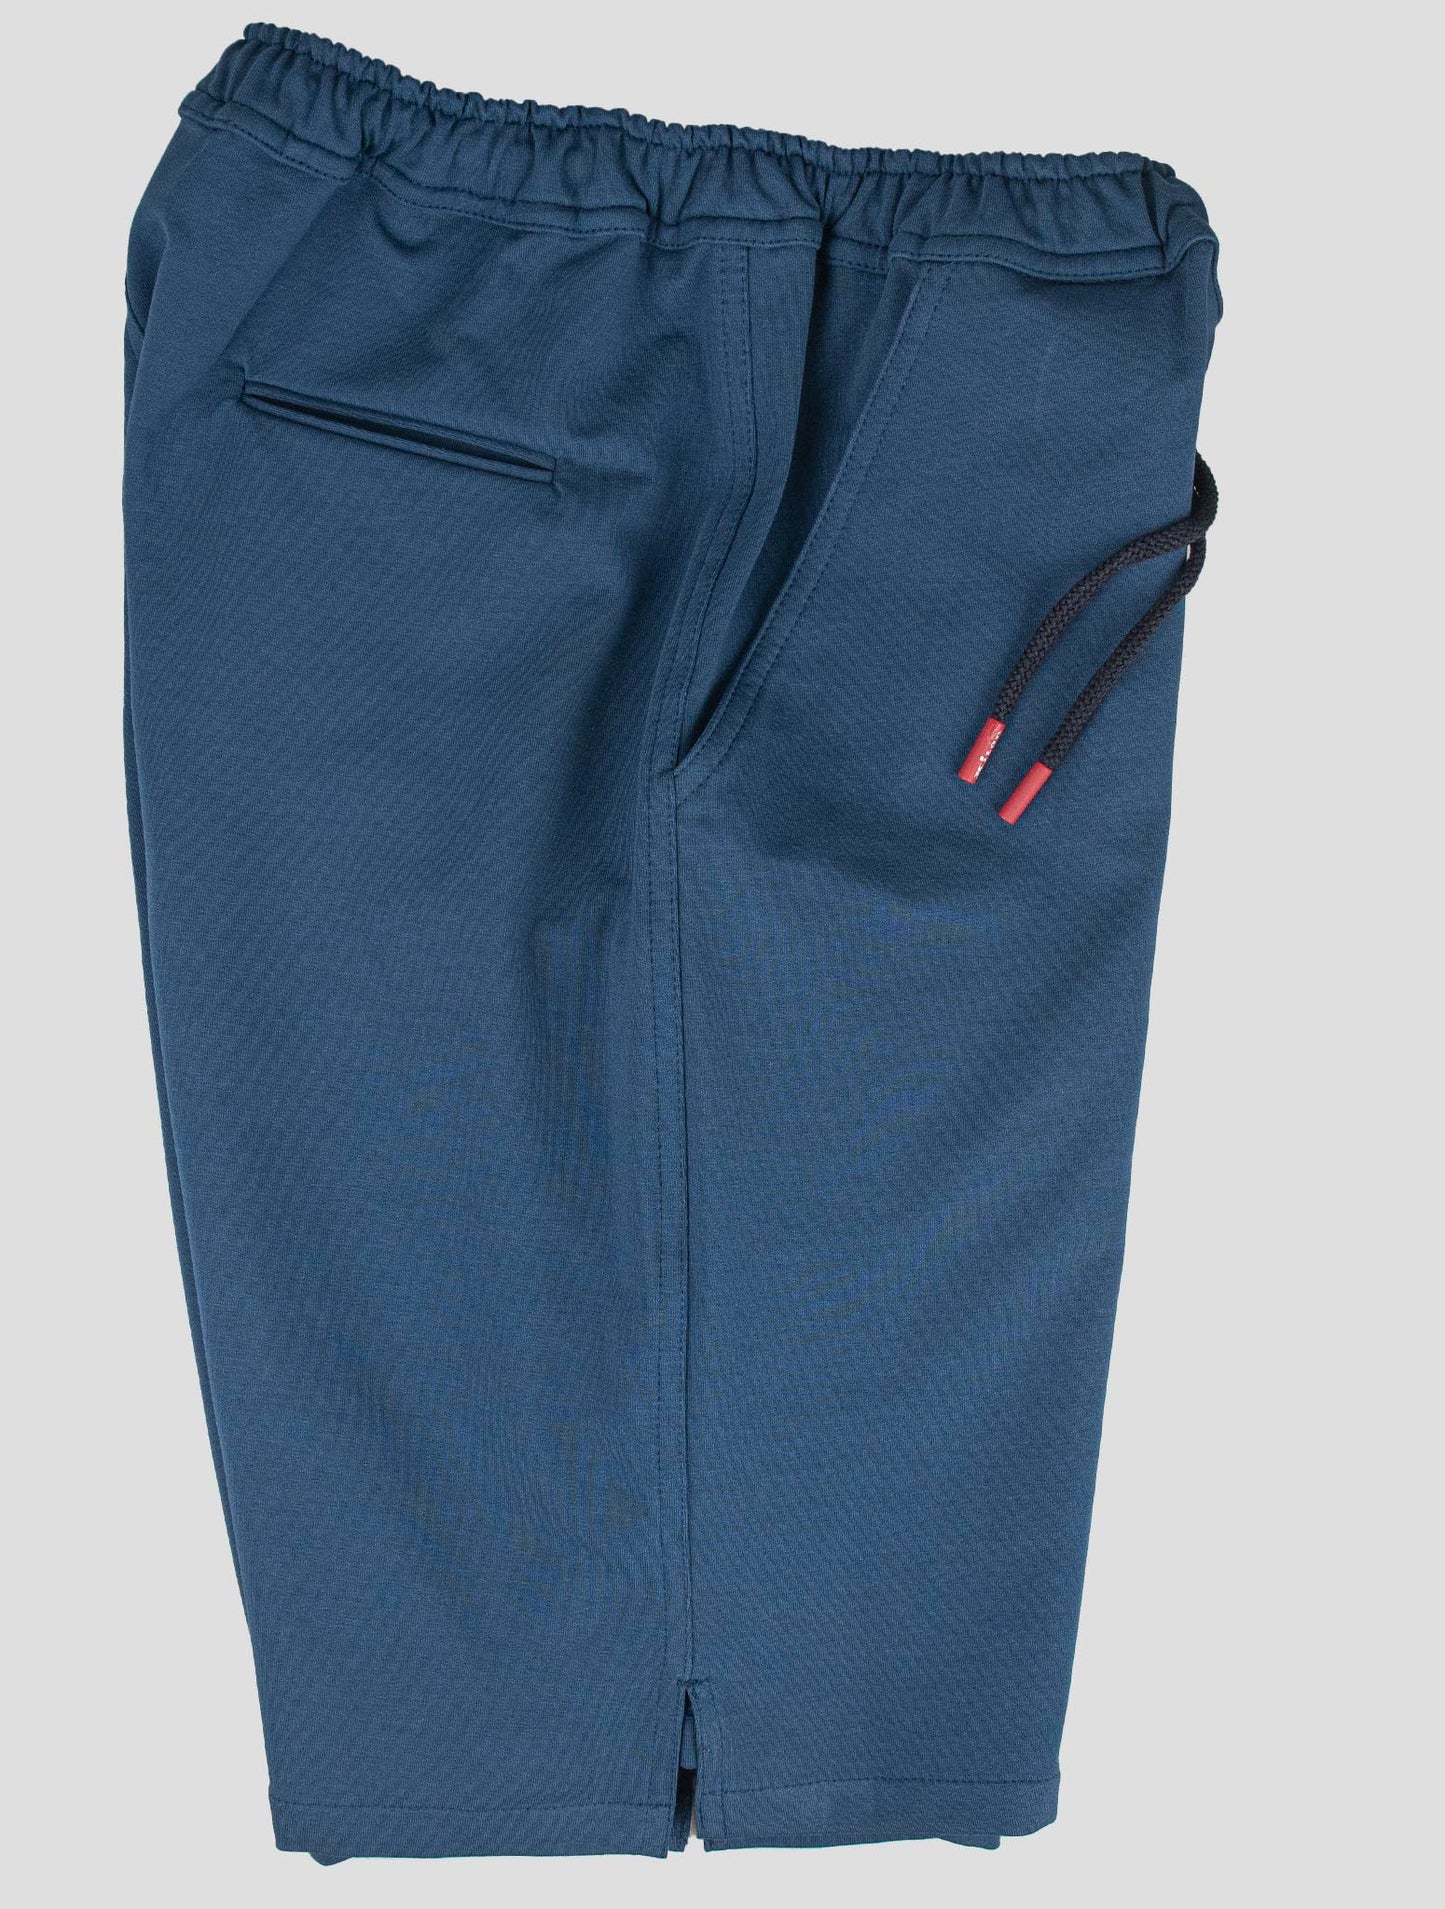 Kiton matchende outfit - Blå Mariano og Blå korte bukser Tracksdragt